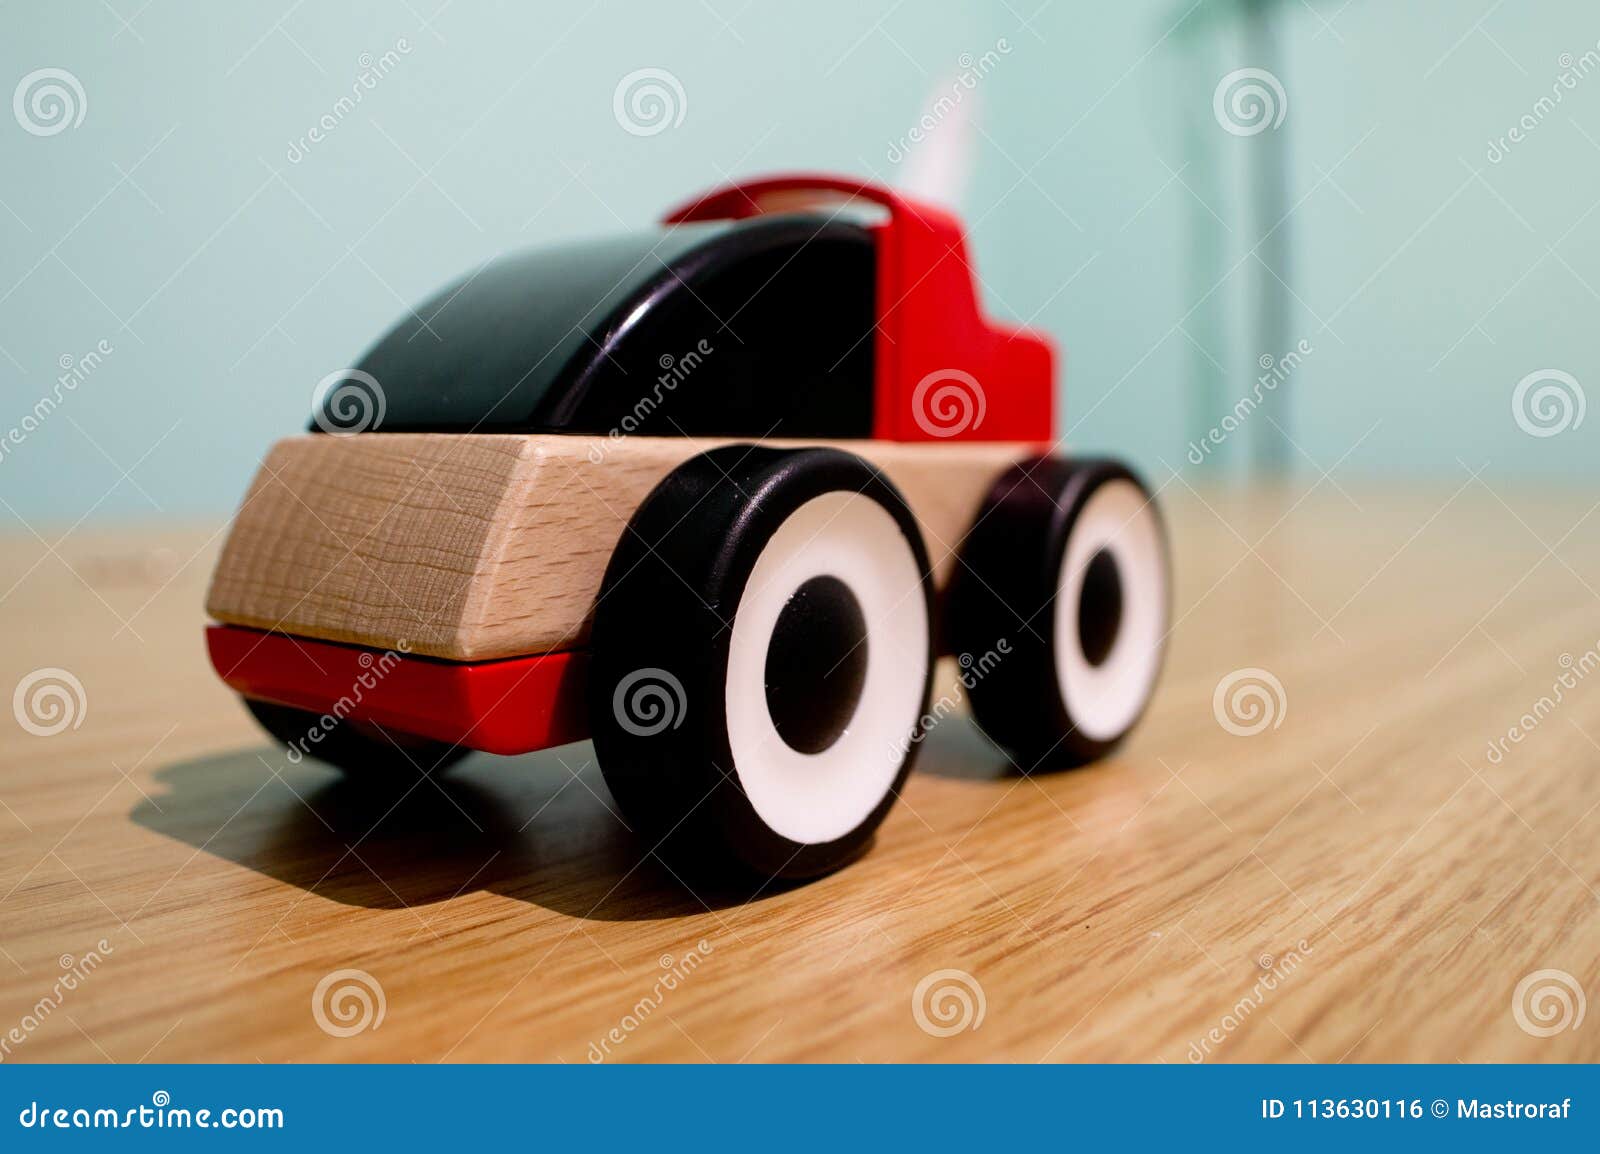 ikea wooden race car